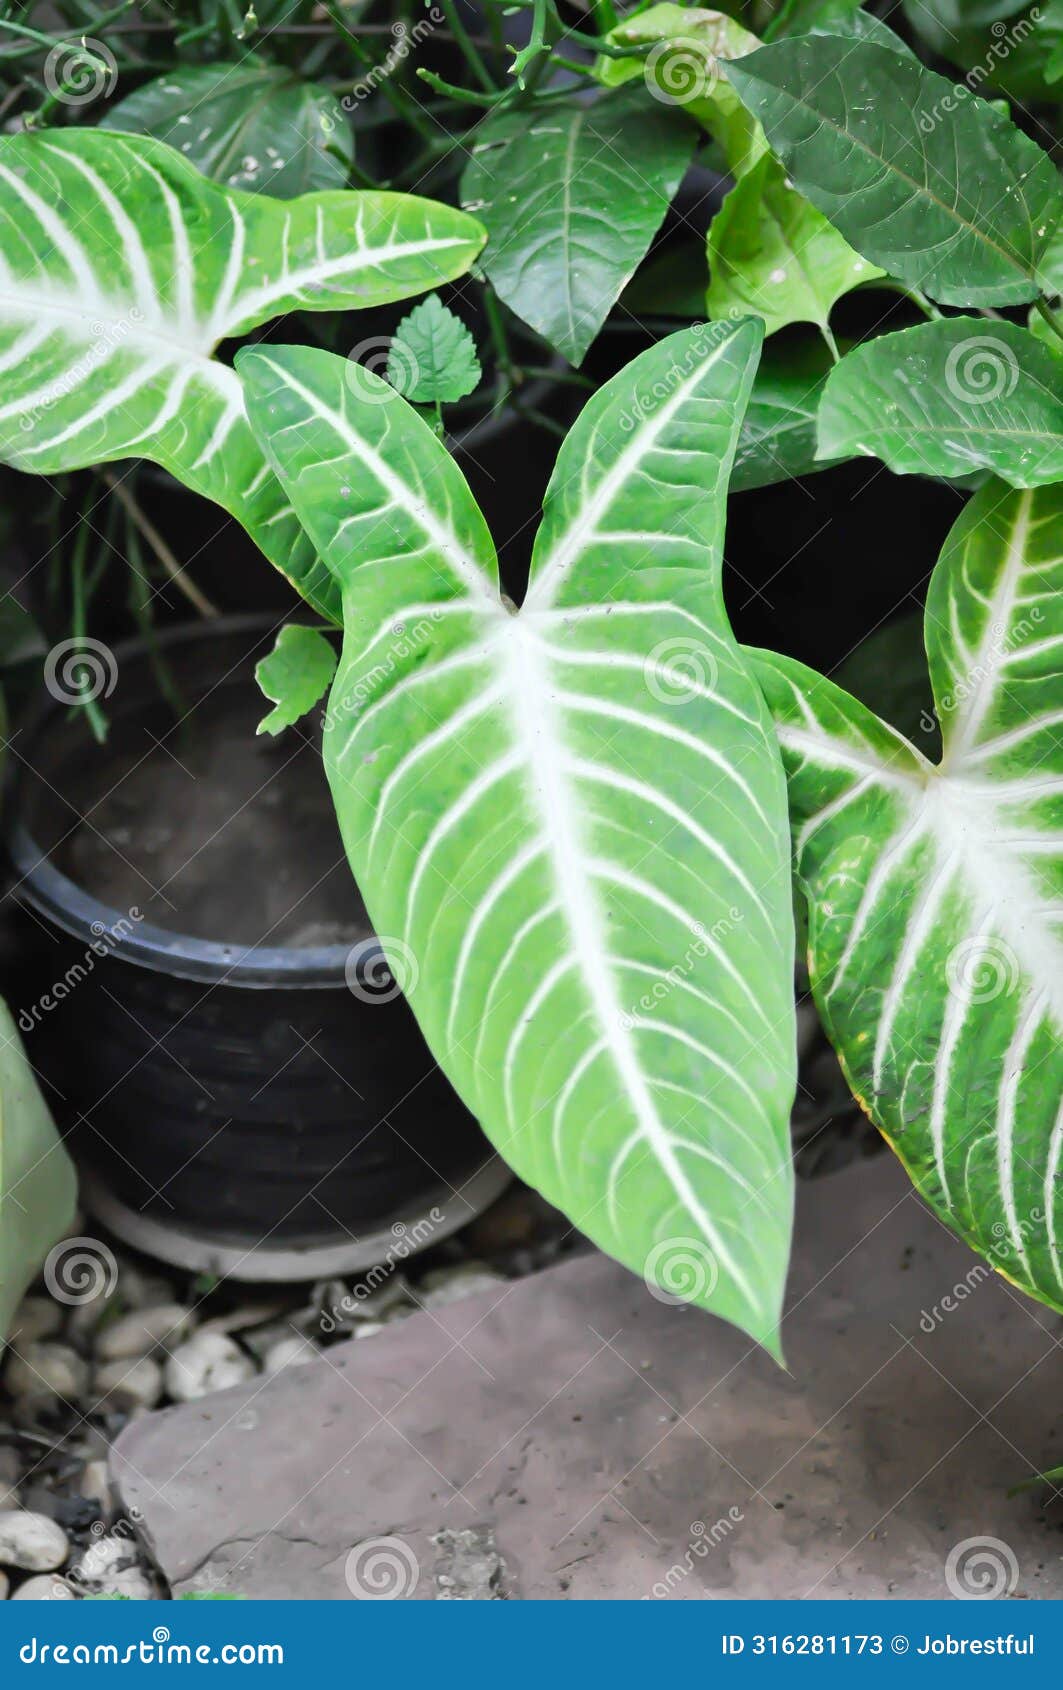 the xanthosoma, the fancy leaf caladium or caladium lindenii andre or madisonsyn or xanthosoma lindenii or araceae